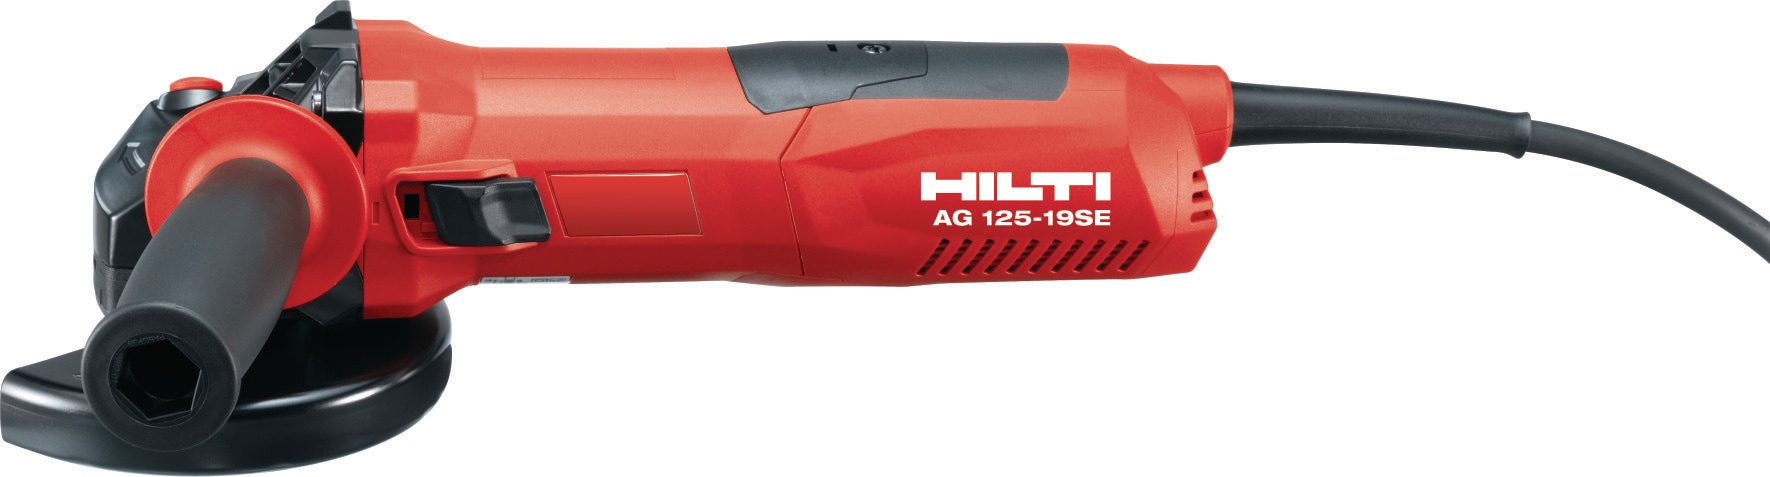 未着用品 【】HILTI AG 125-A22 ディスクグラインダー www.m